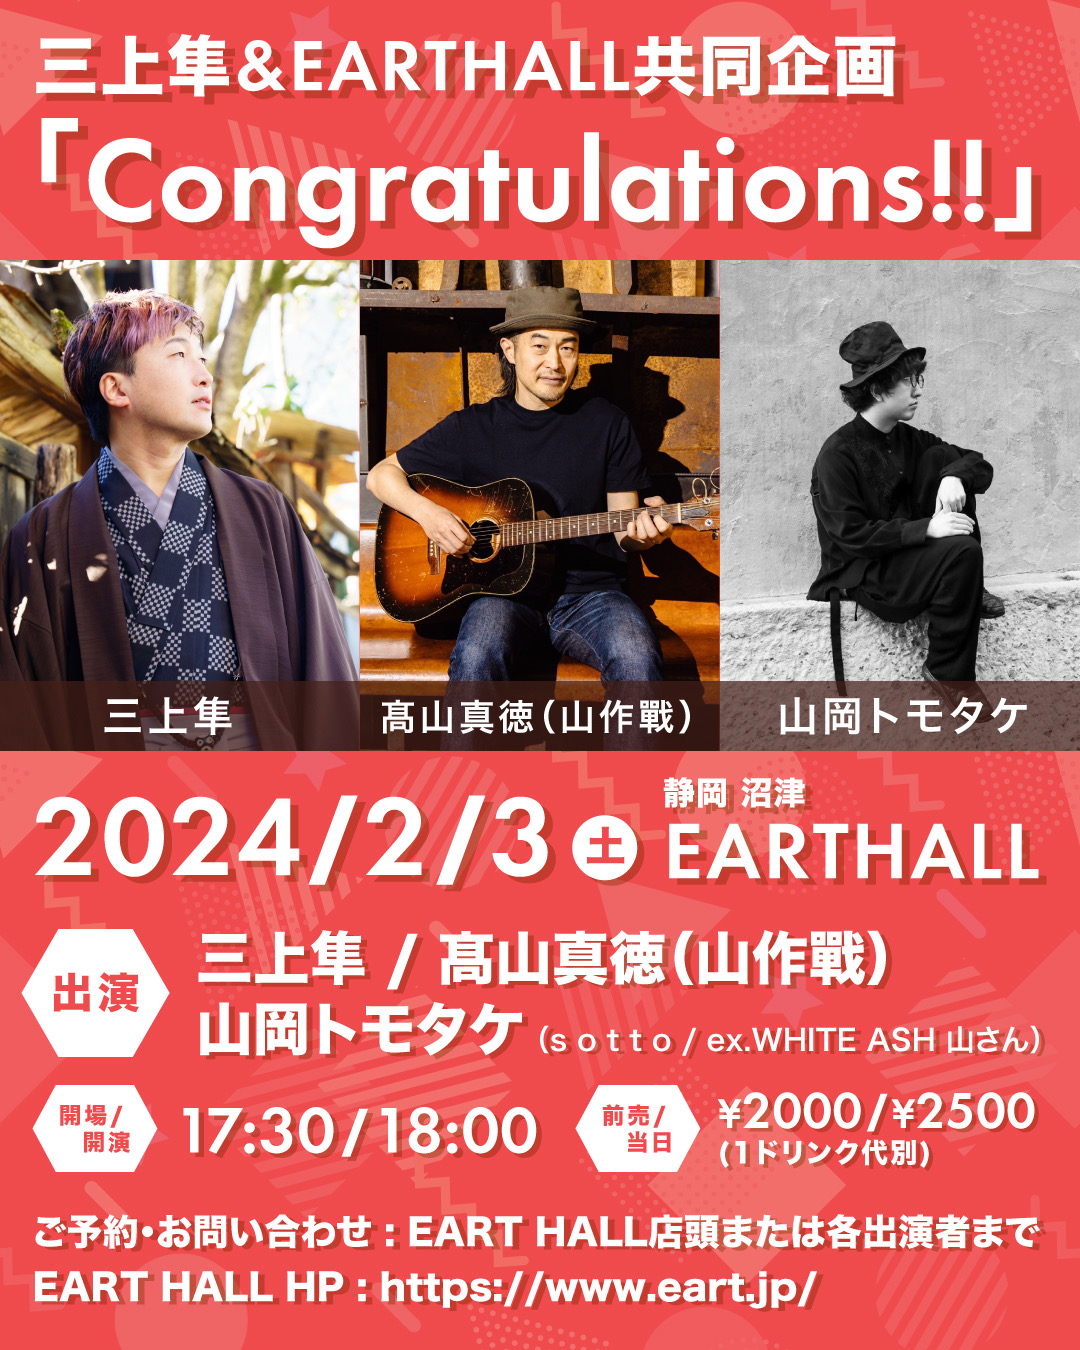 三上隼&EARTHALL共同企画 「Congratulations!!」